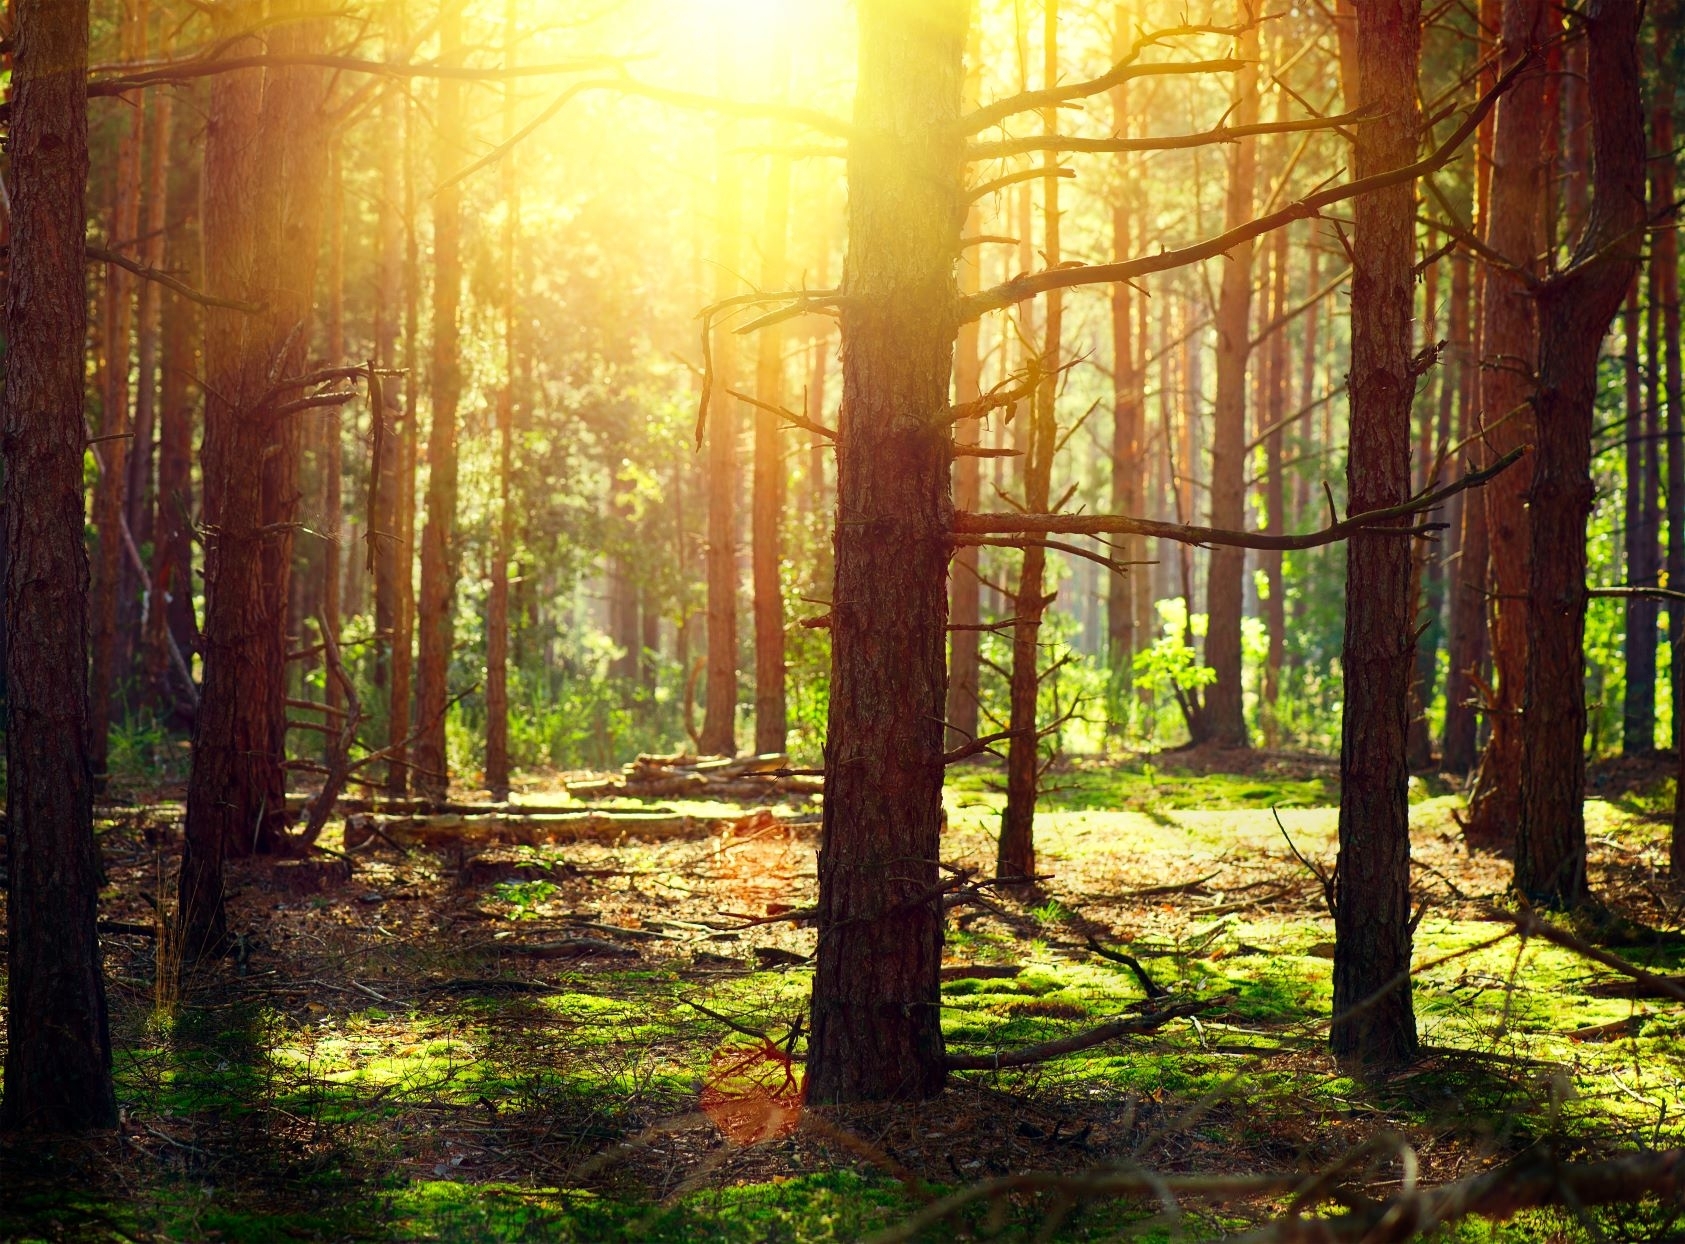 Apie teisę gauti kompensaciją, jei Jūsų miške nustatyti veiklos ribojimai